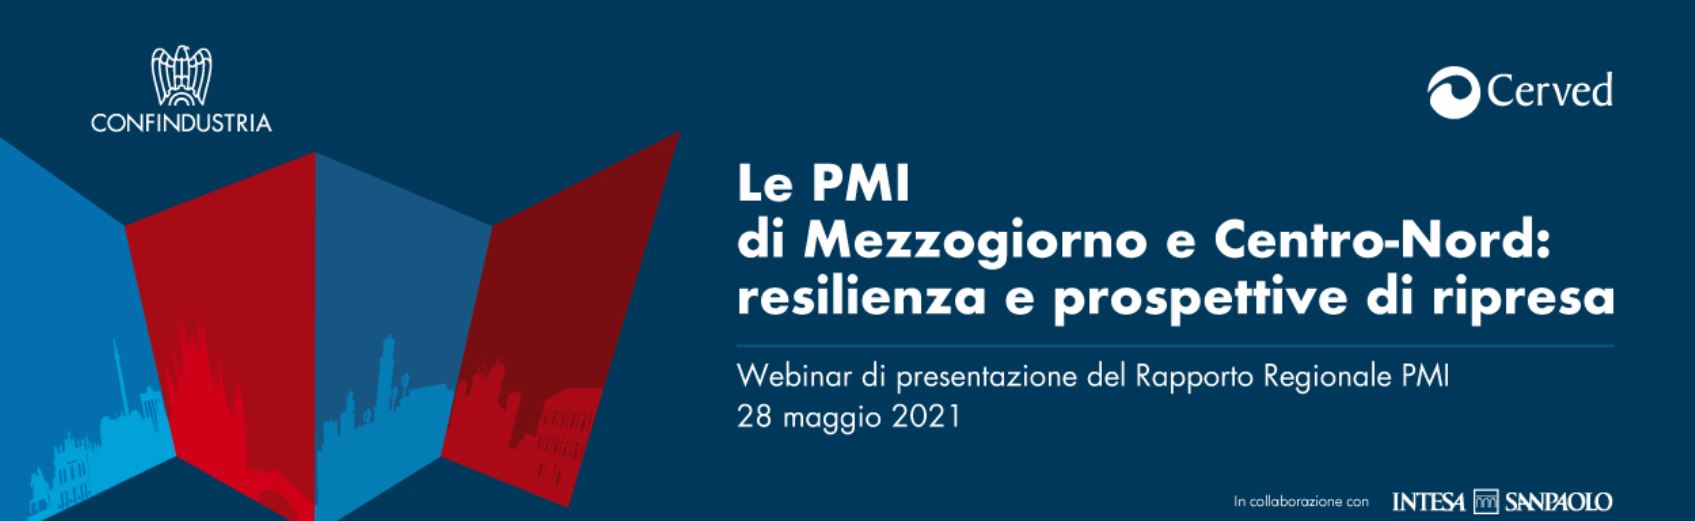 Rapporto Regionale PMI 2021